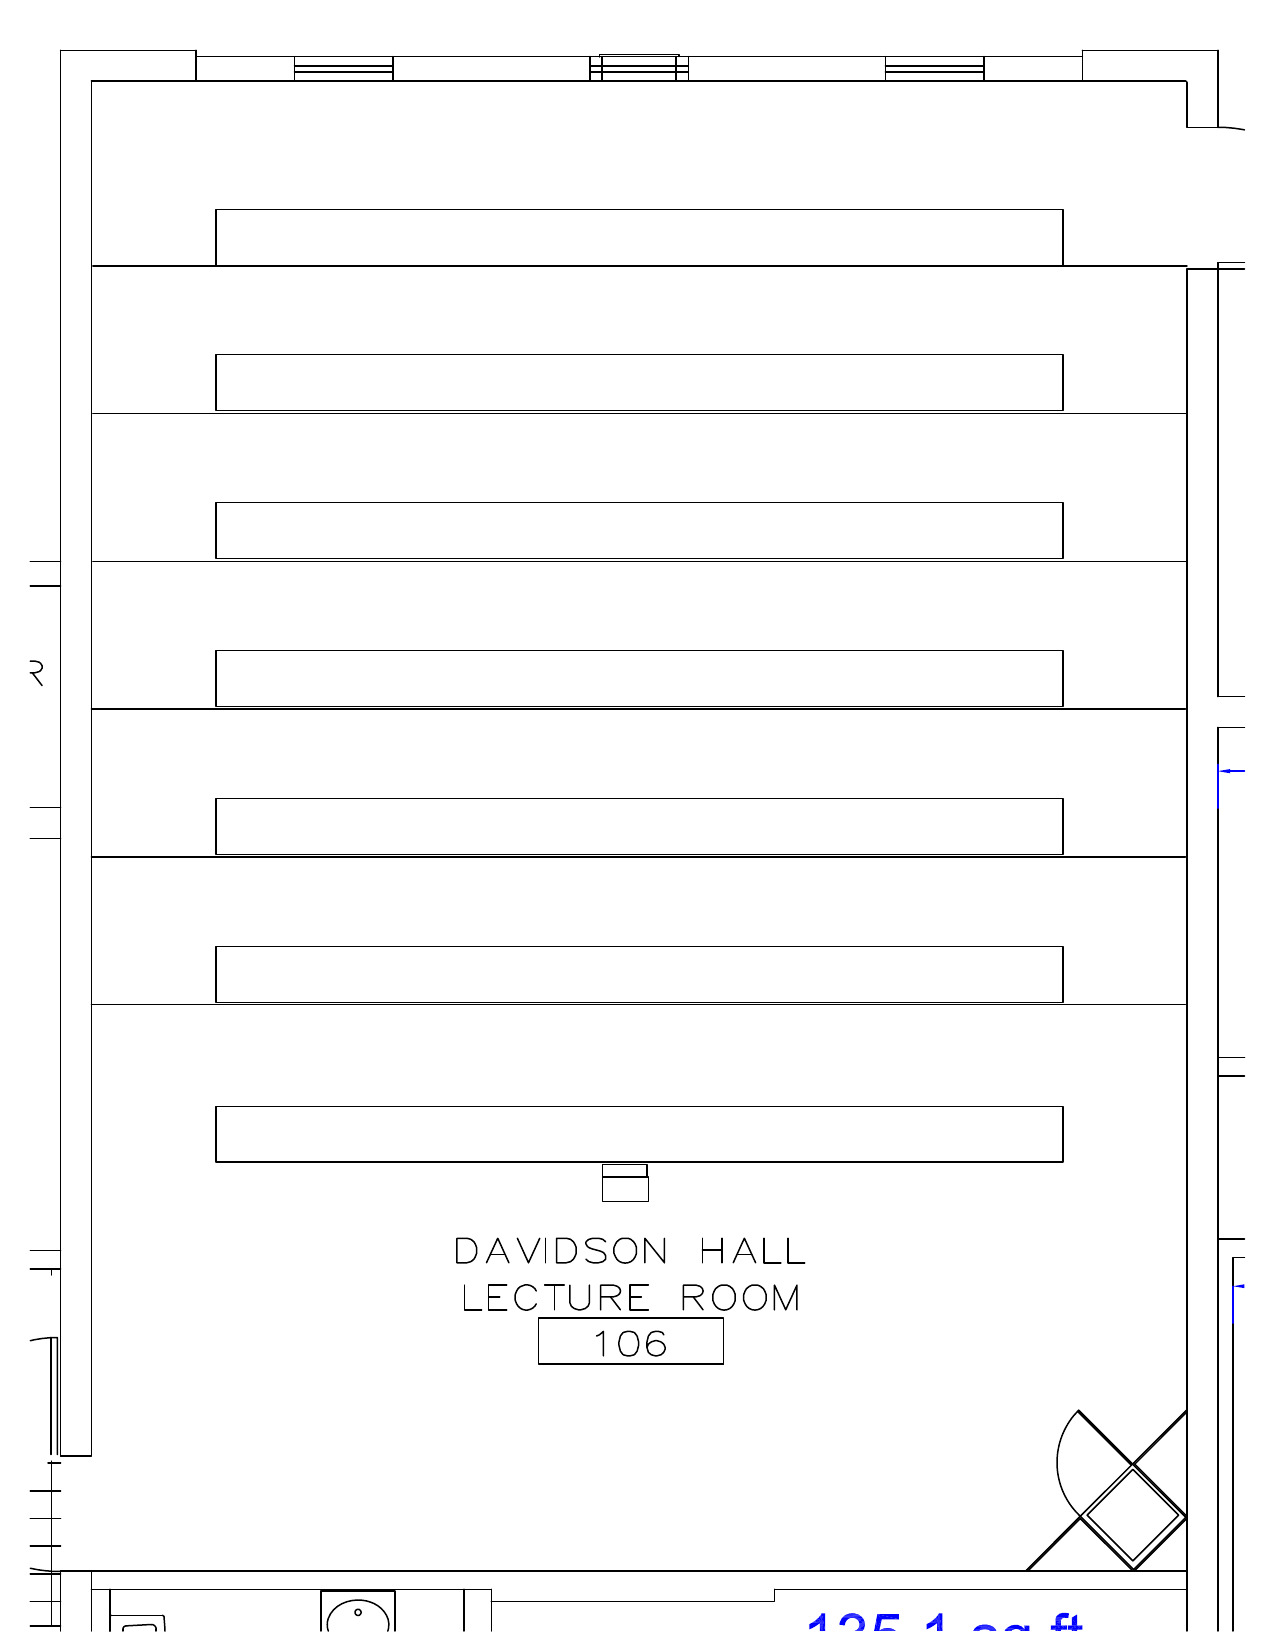 Seating chart for Davidson Hall